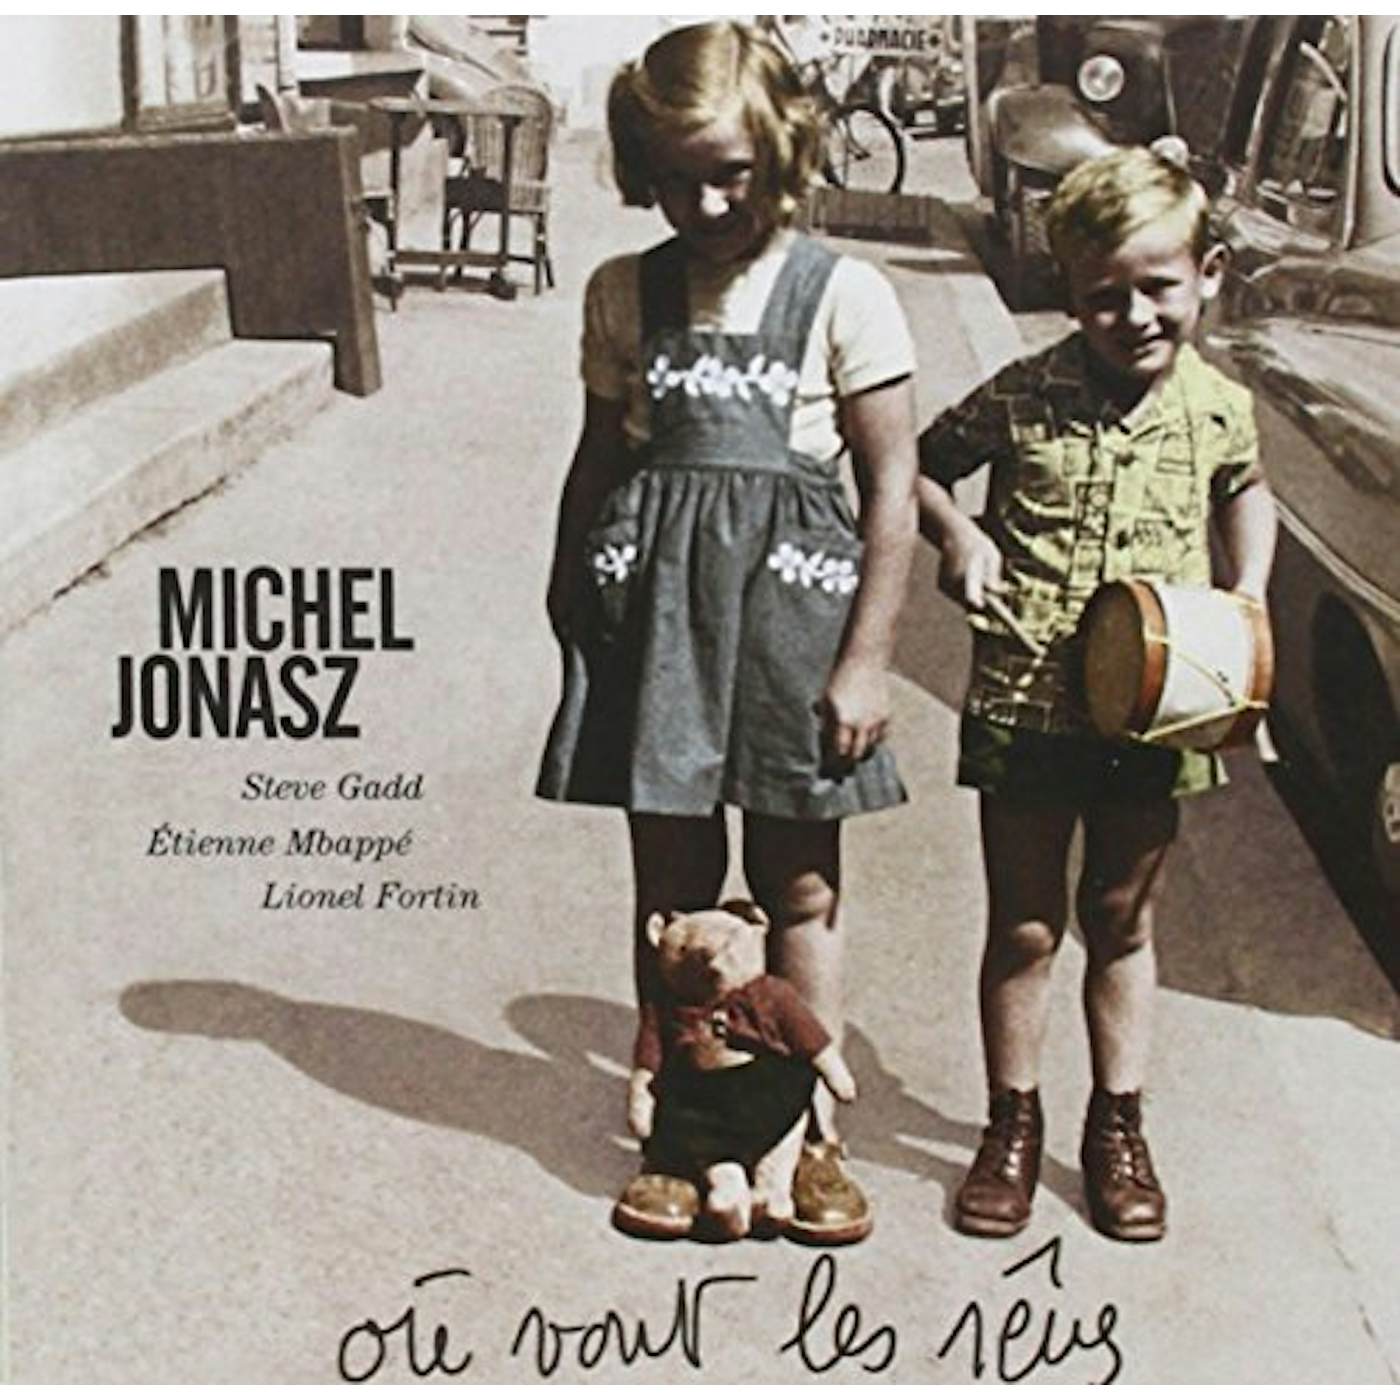 Michel Jonasz OU VONT LES RUVES CD